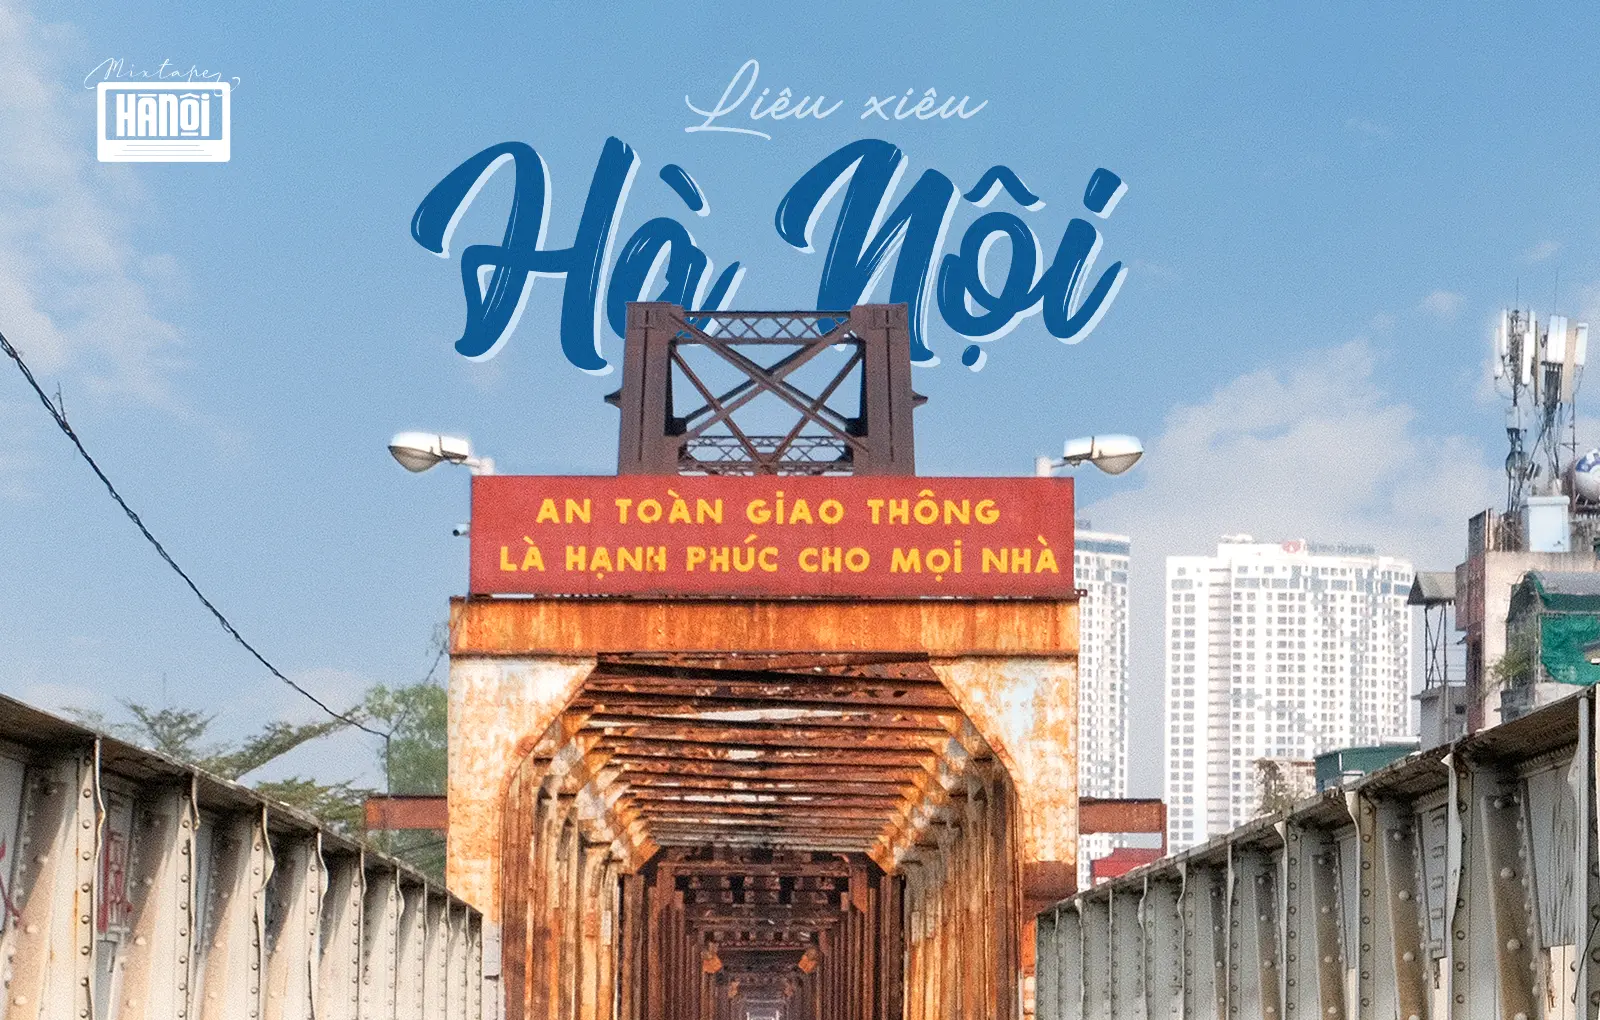 Mixtape Hanoi #6: Hanoi from the floating train